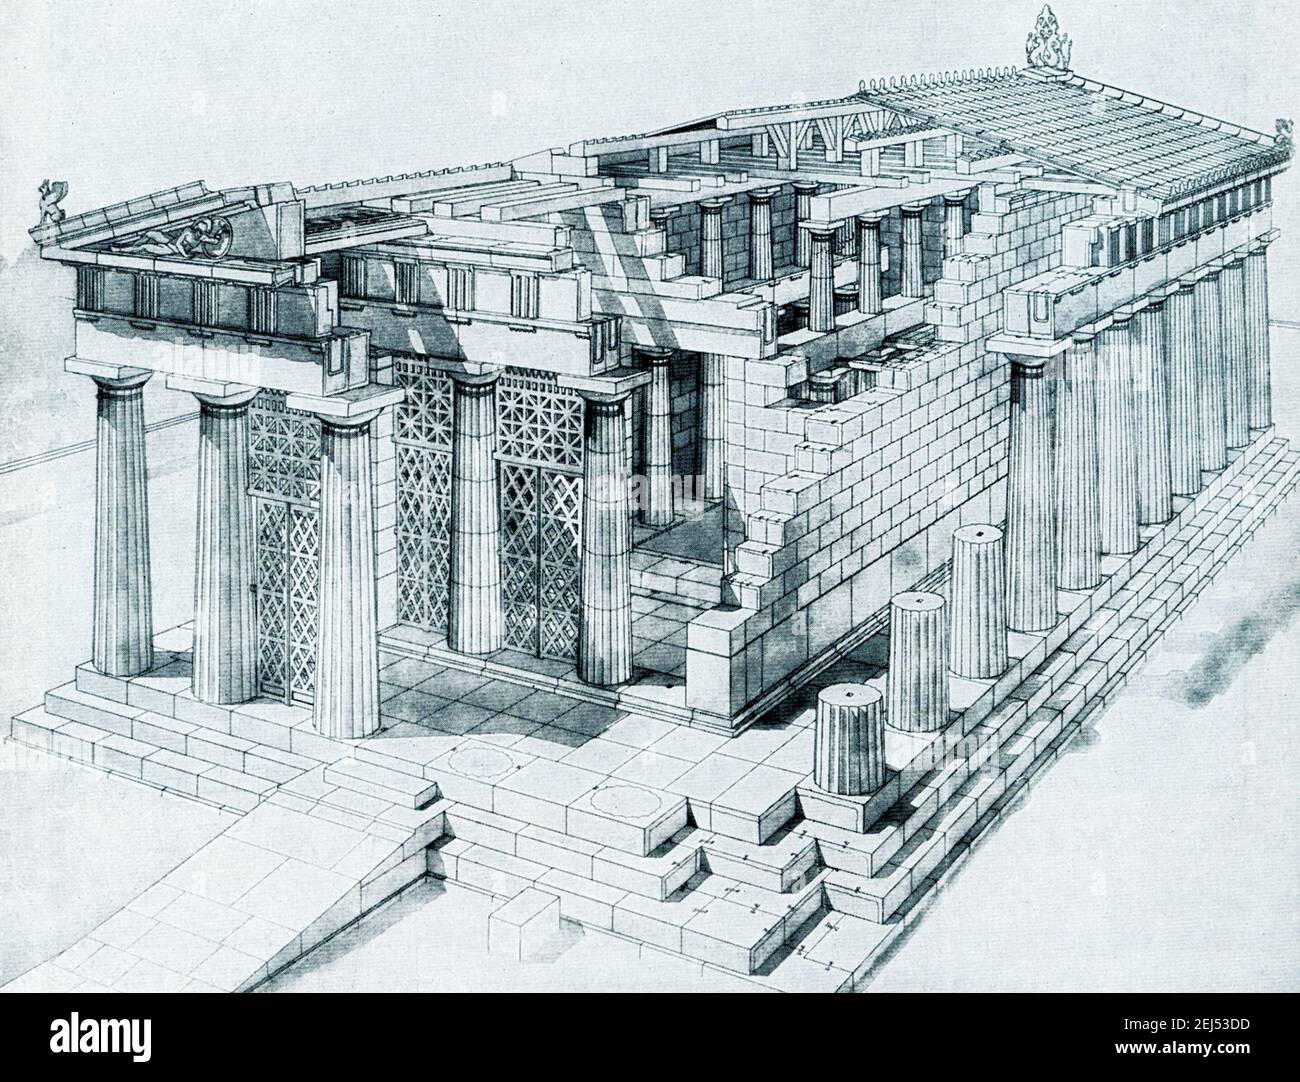 Diese Skizze zeigt den Tempel von Aphaia in Aegina zu Beginn des 5th. Jahrhunderts v. Chr. Sie basiert auf der Zeichnung von Furtwangler-Fiechter. Der Tempel der Athena Aphaia in Aegina: Der Tempel der Aphaia ist der Göttin Athena gewidmet und befindet sich auf der Insel Aegina, auf einem Hügel. Dies ist eines der antiken architektonischen Wunder des antiken Griechenlands. Es wurde 480 v. Chr. erbaut und 25 der ursprünglichen 32 dorischen Säulen stehen noch immer aufgrund der Geschicklichkeit der Restauratoren. Es befindet sich in einem Sanctuary Komplex in Ägina etwa 13 km östlich des Haupthafens. Stockfoto